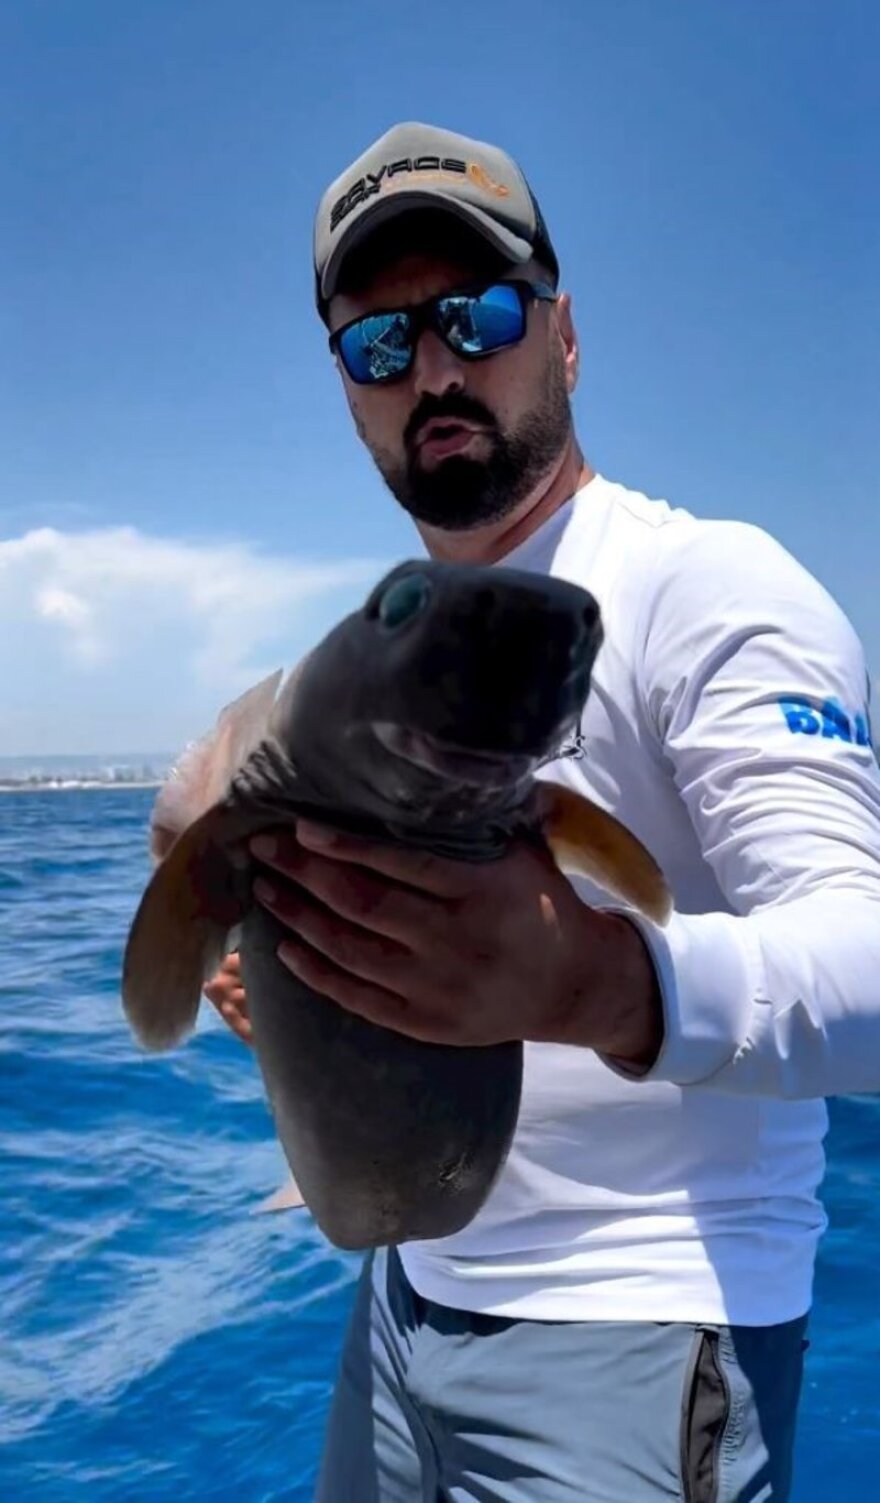 Τουρκία: Καρχαρίας με σμαραγδένια μάτια πιάστηκε στα δίχτυα ενός ψαρά στην Αττάλεια – Φωτογραφίες